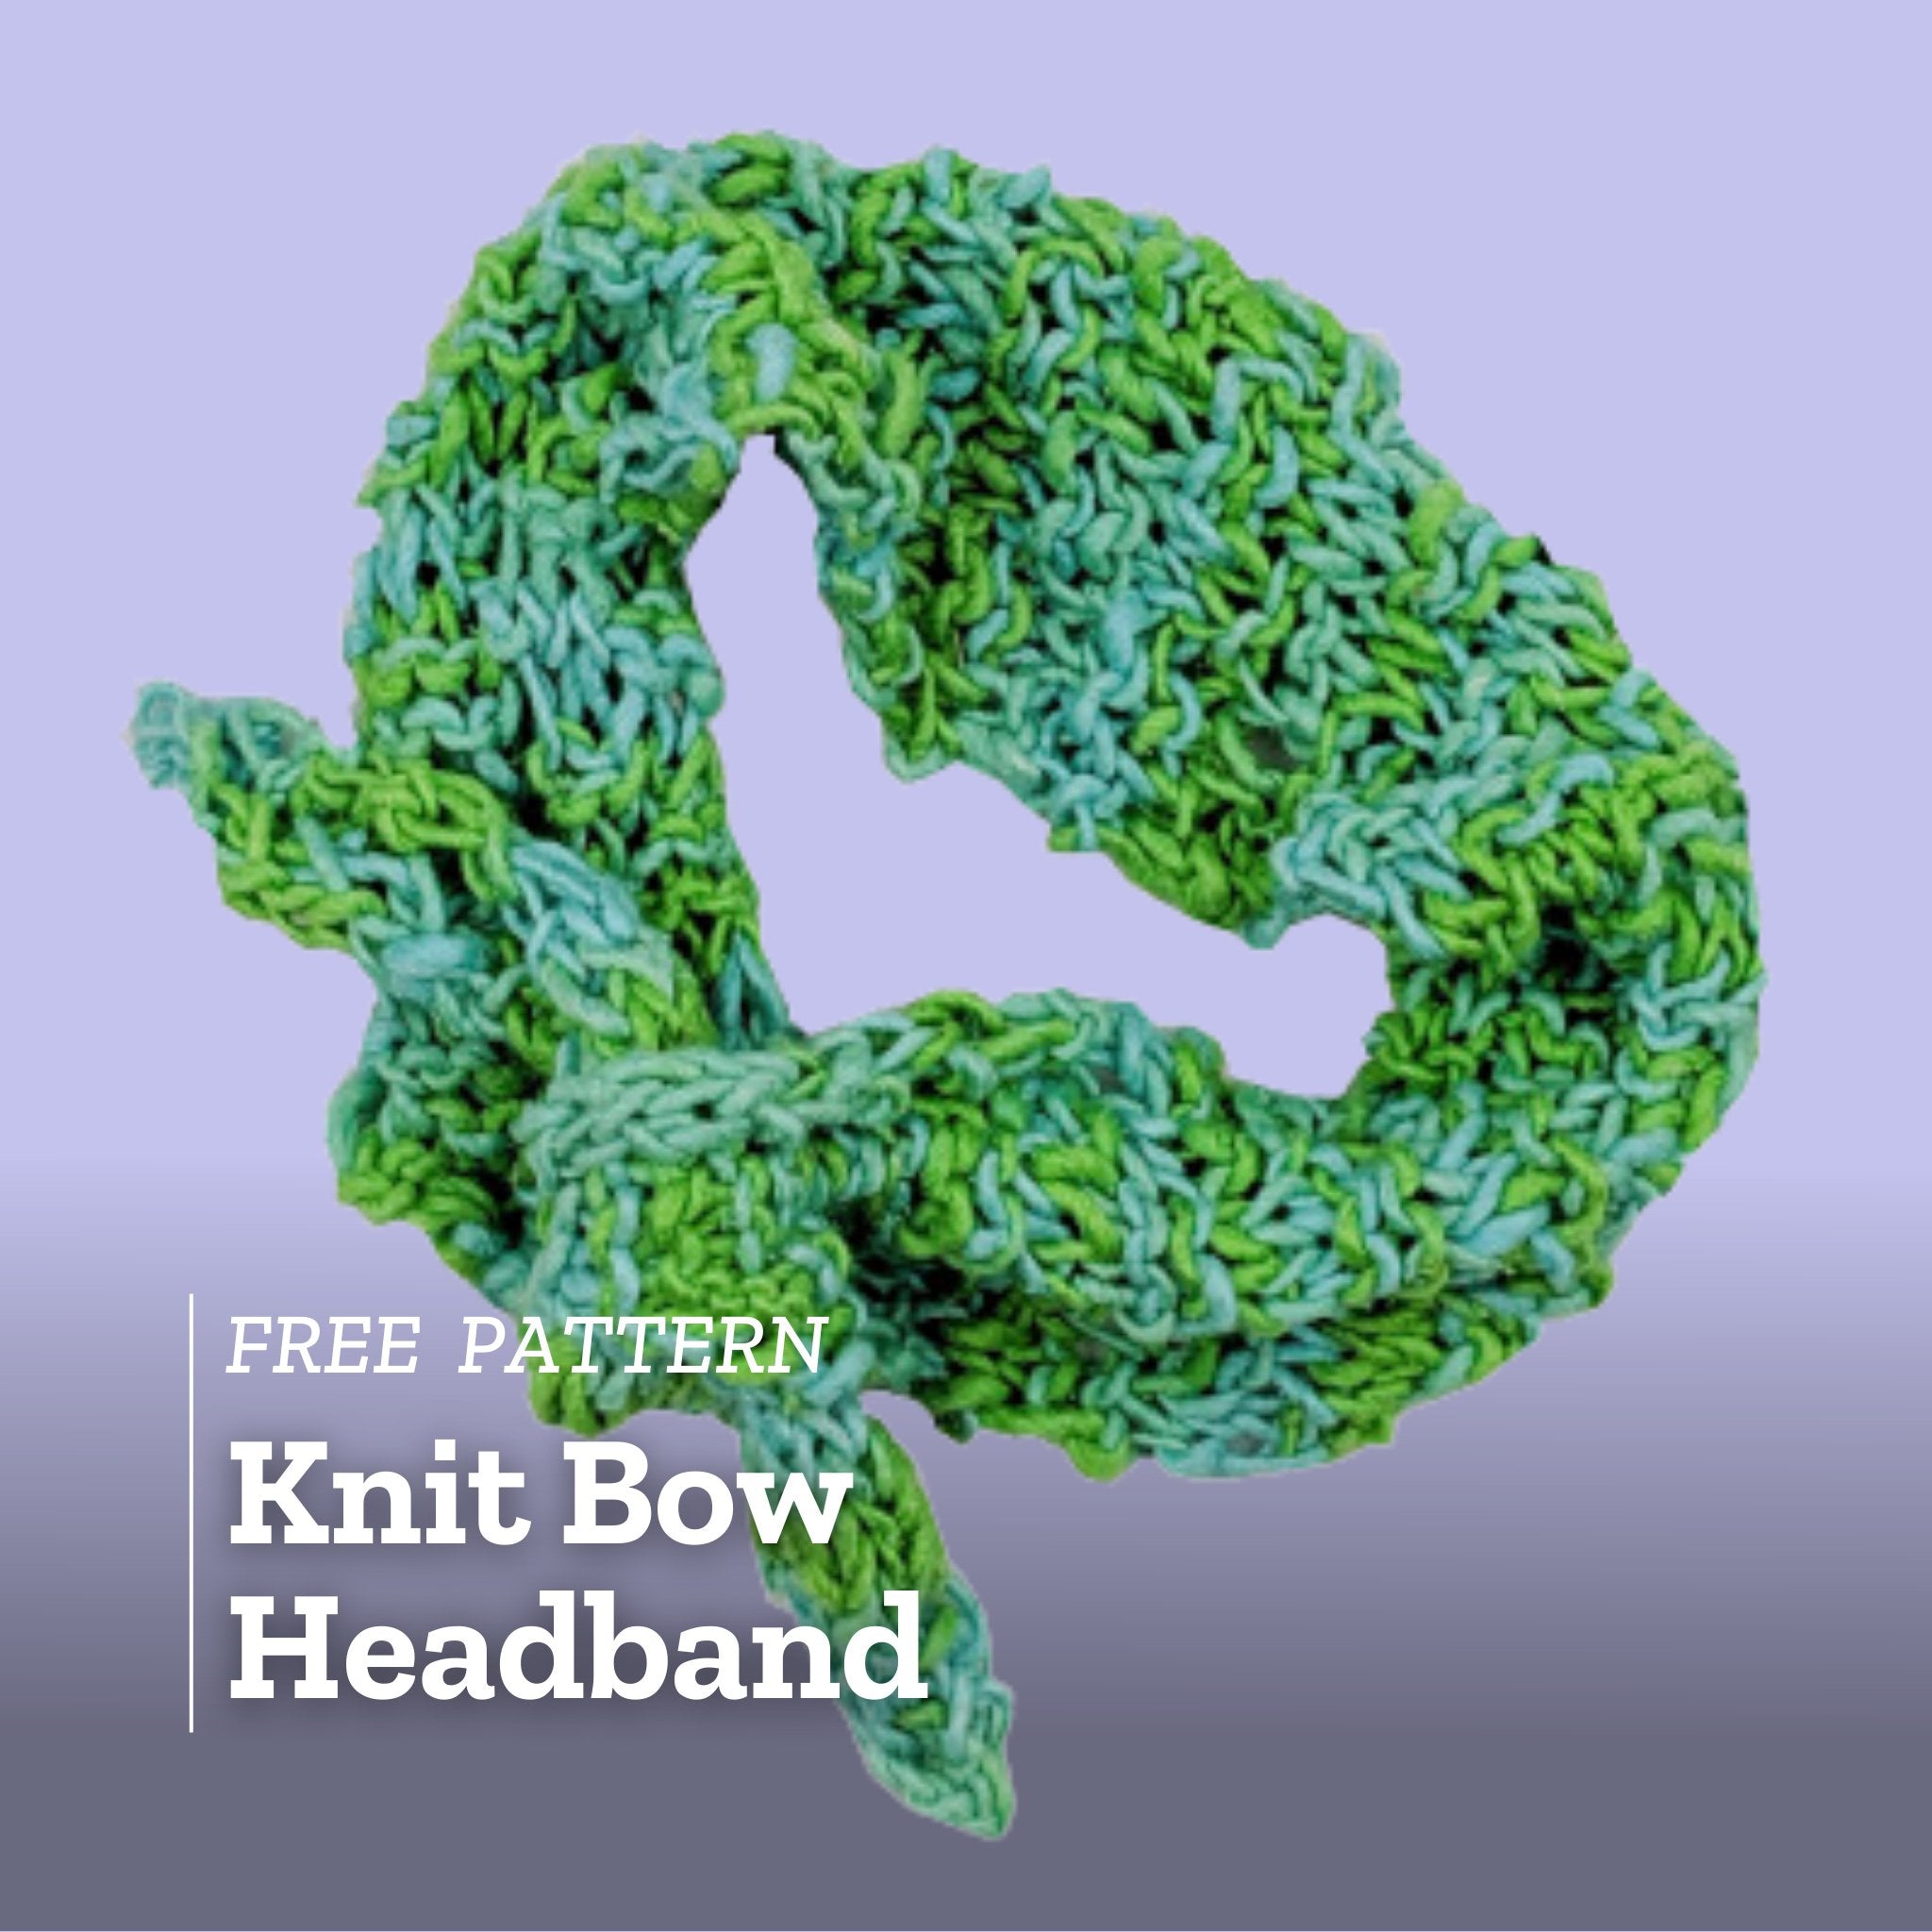 Free Pattern: Knit Bow Headband - Darn Good Yarn